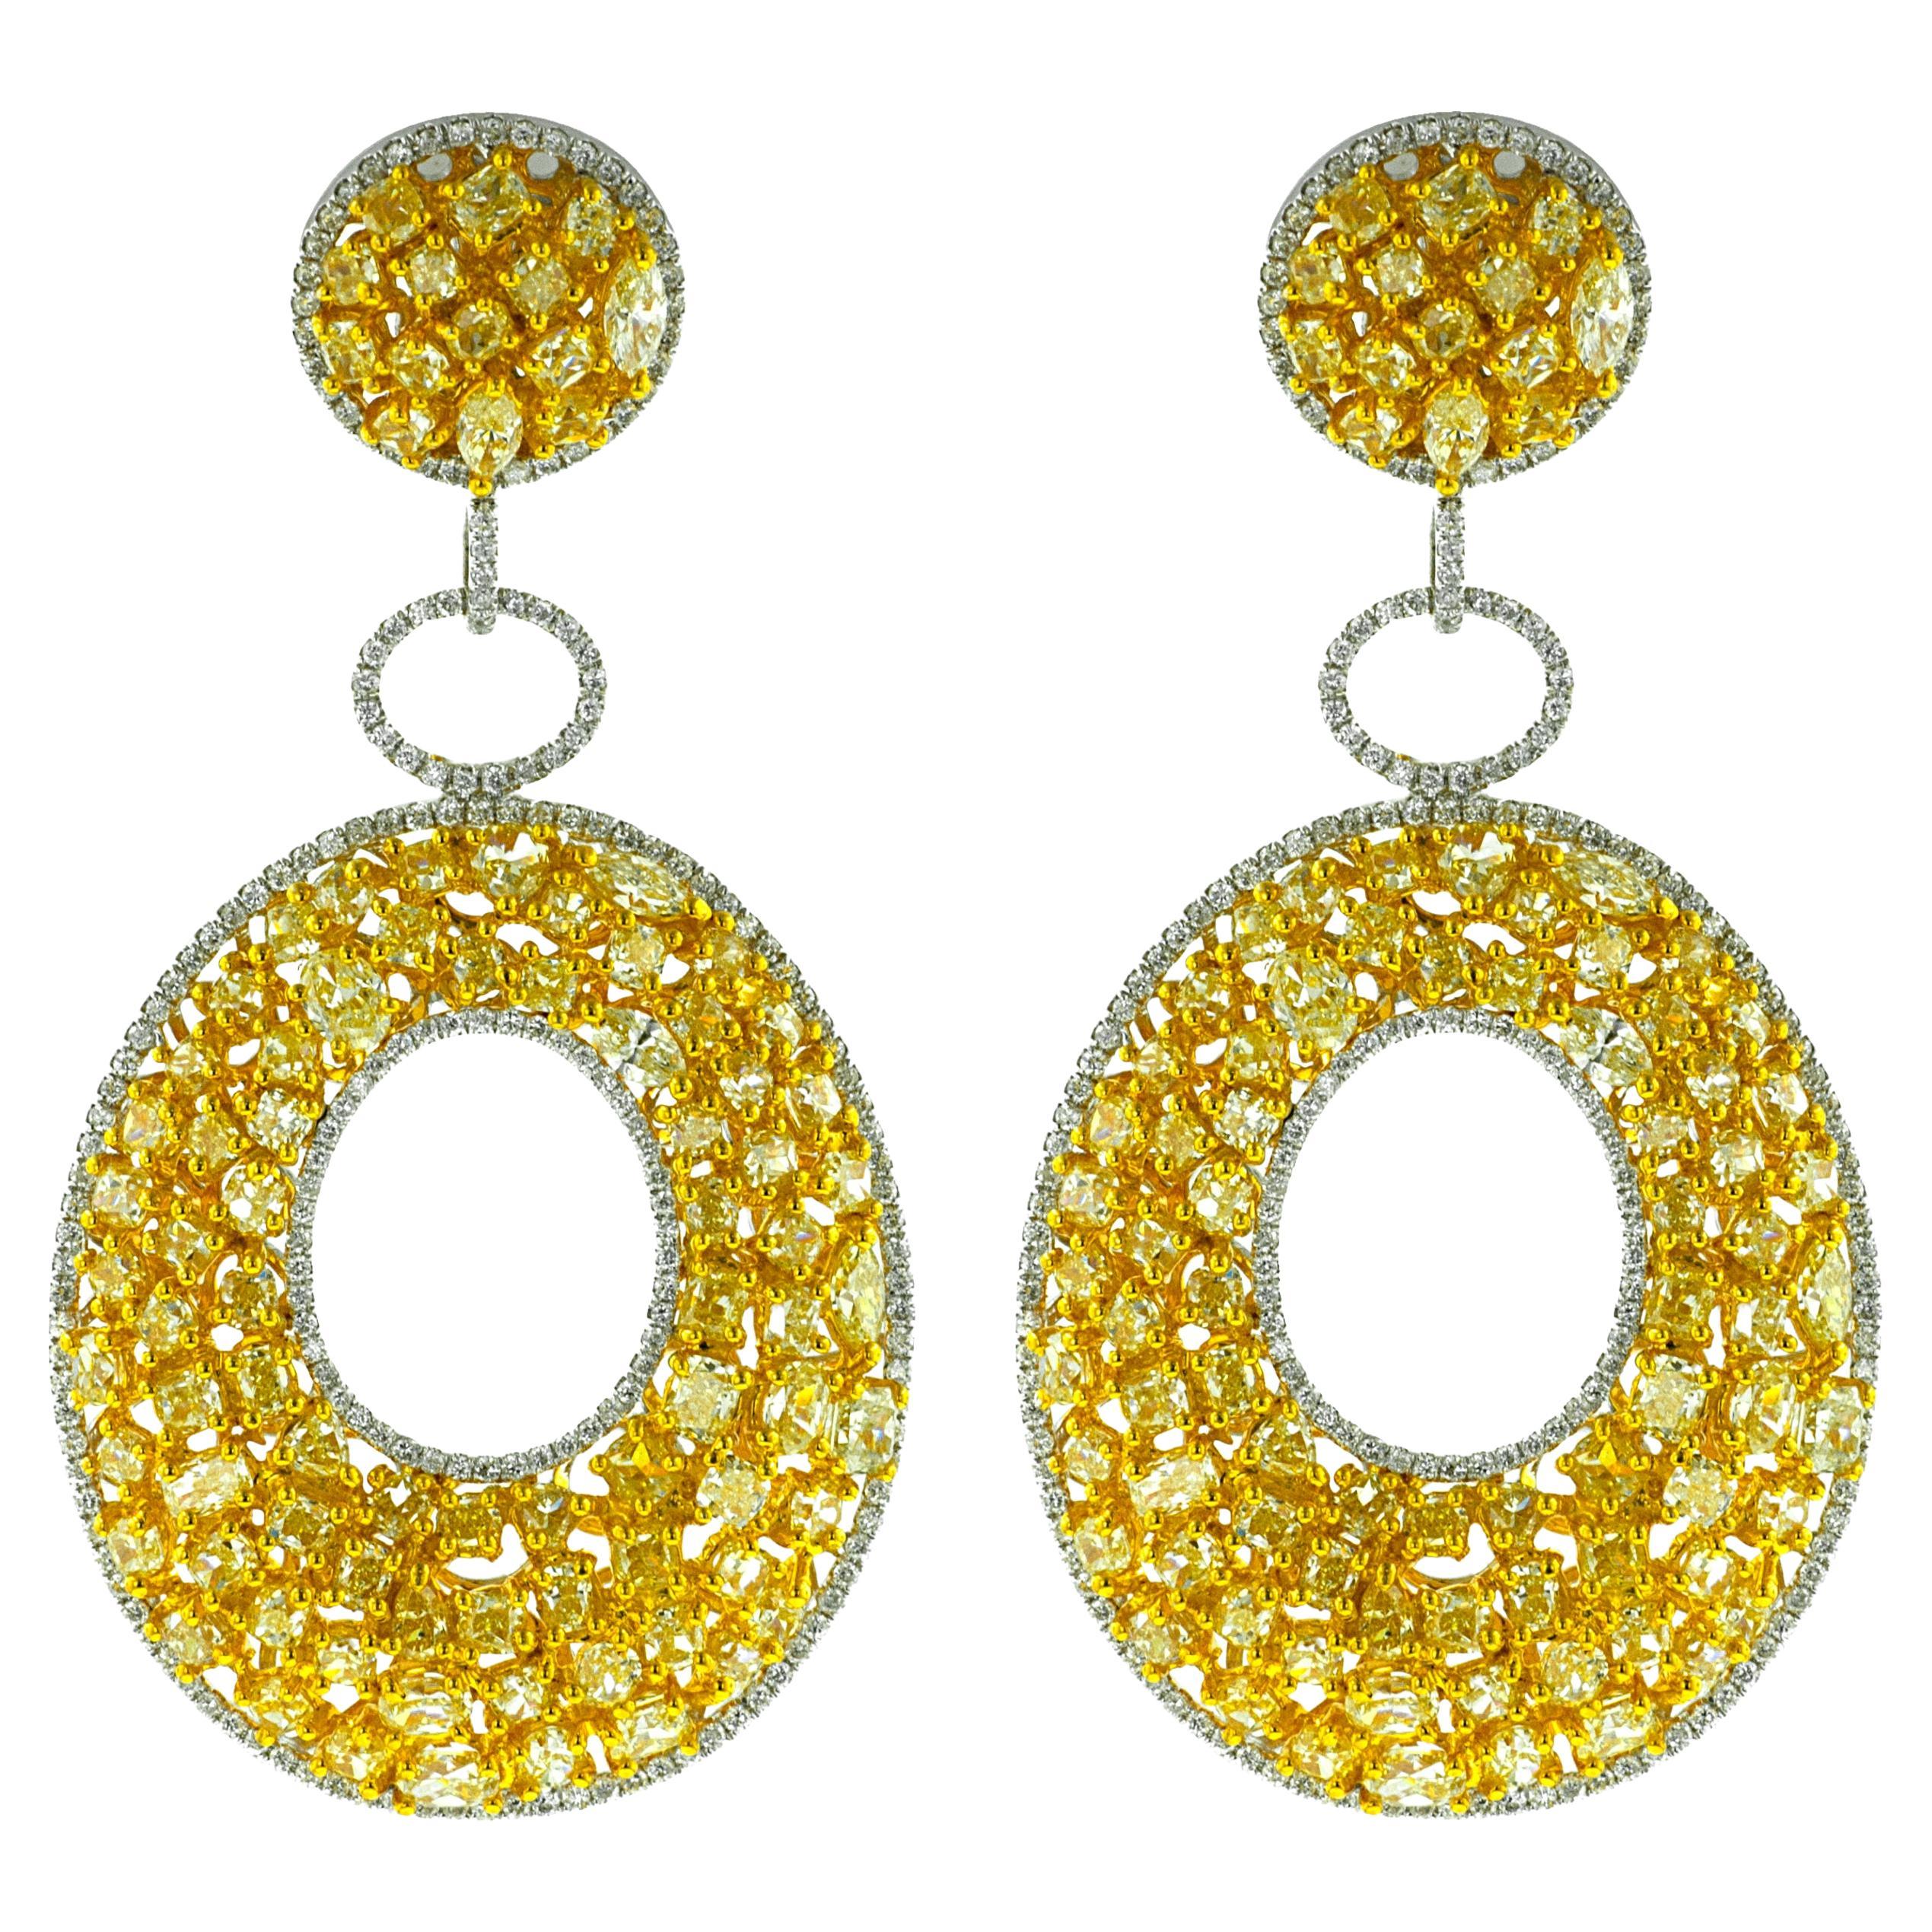 Diana M. Ohrringe aus 18 kt Weiß- und Gelbgold mit ausgefallenen Diamanten von 20,12 Karat